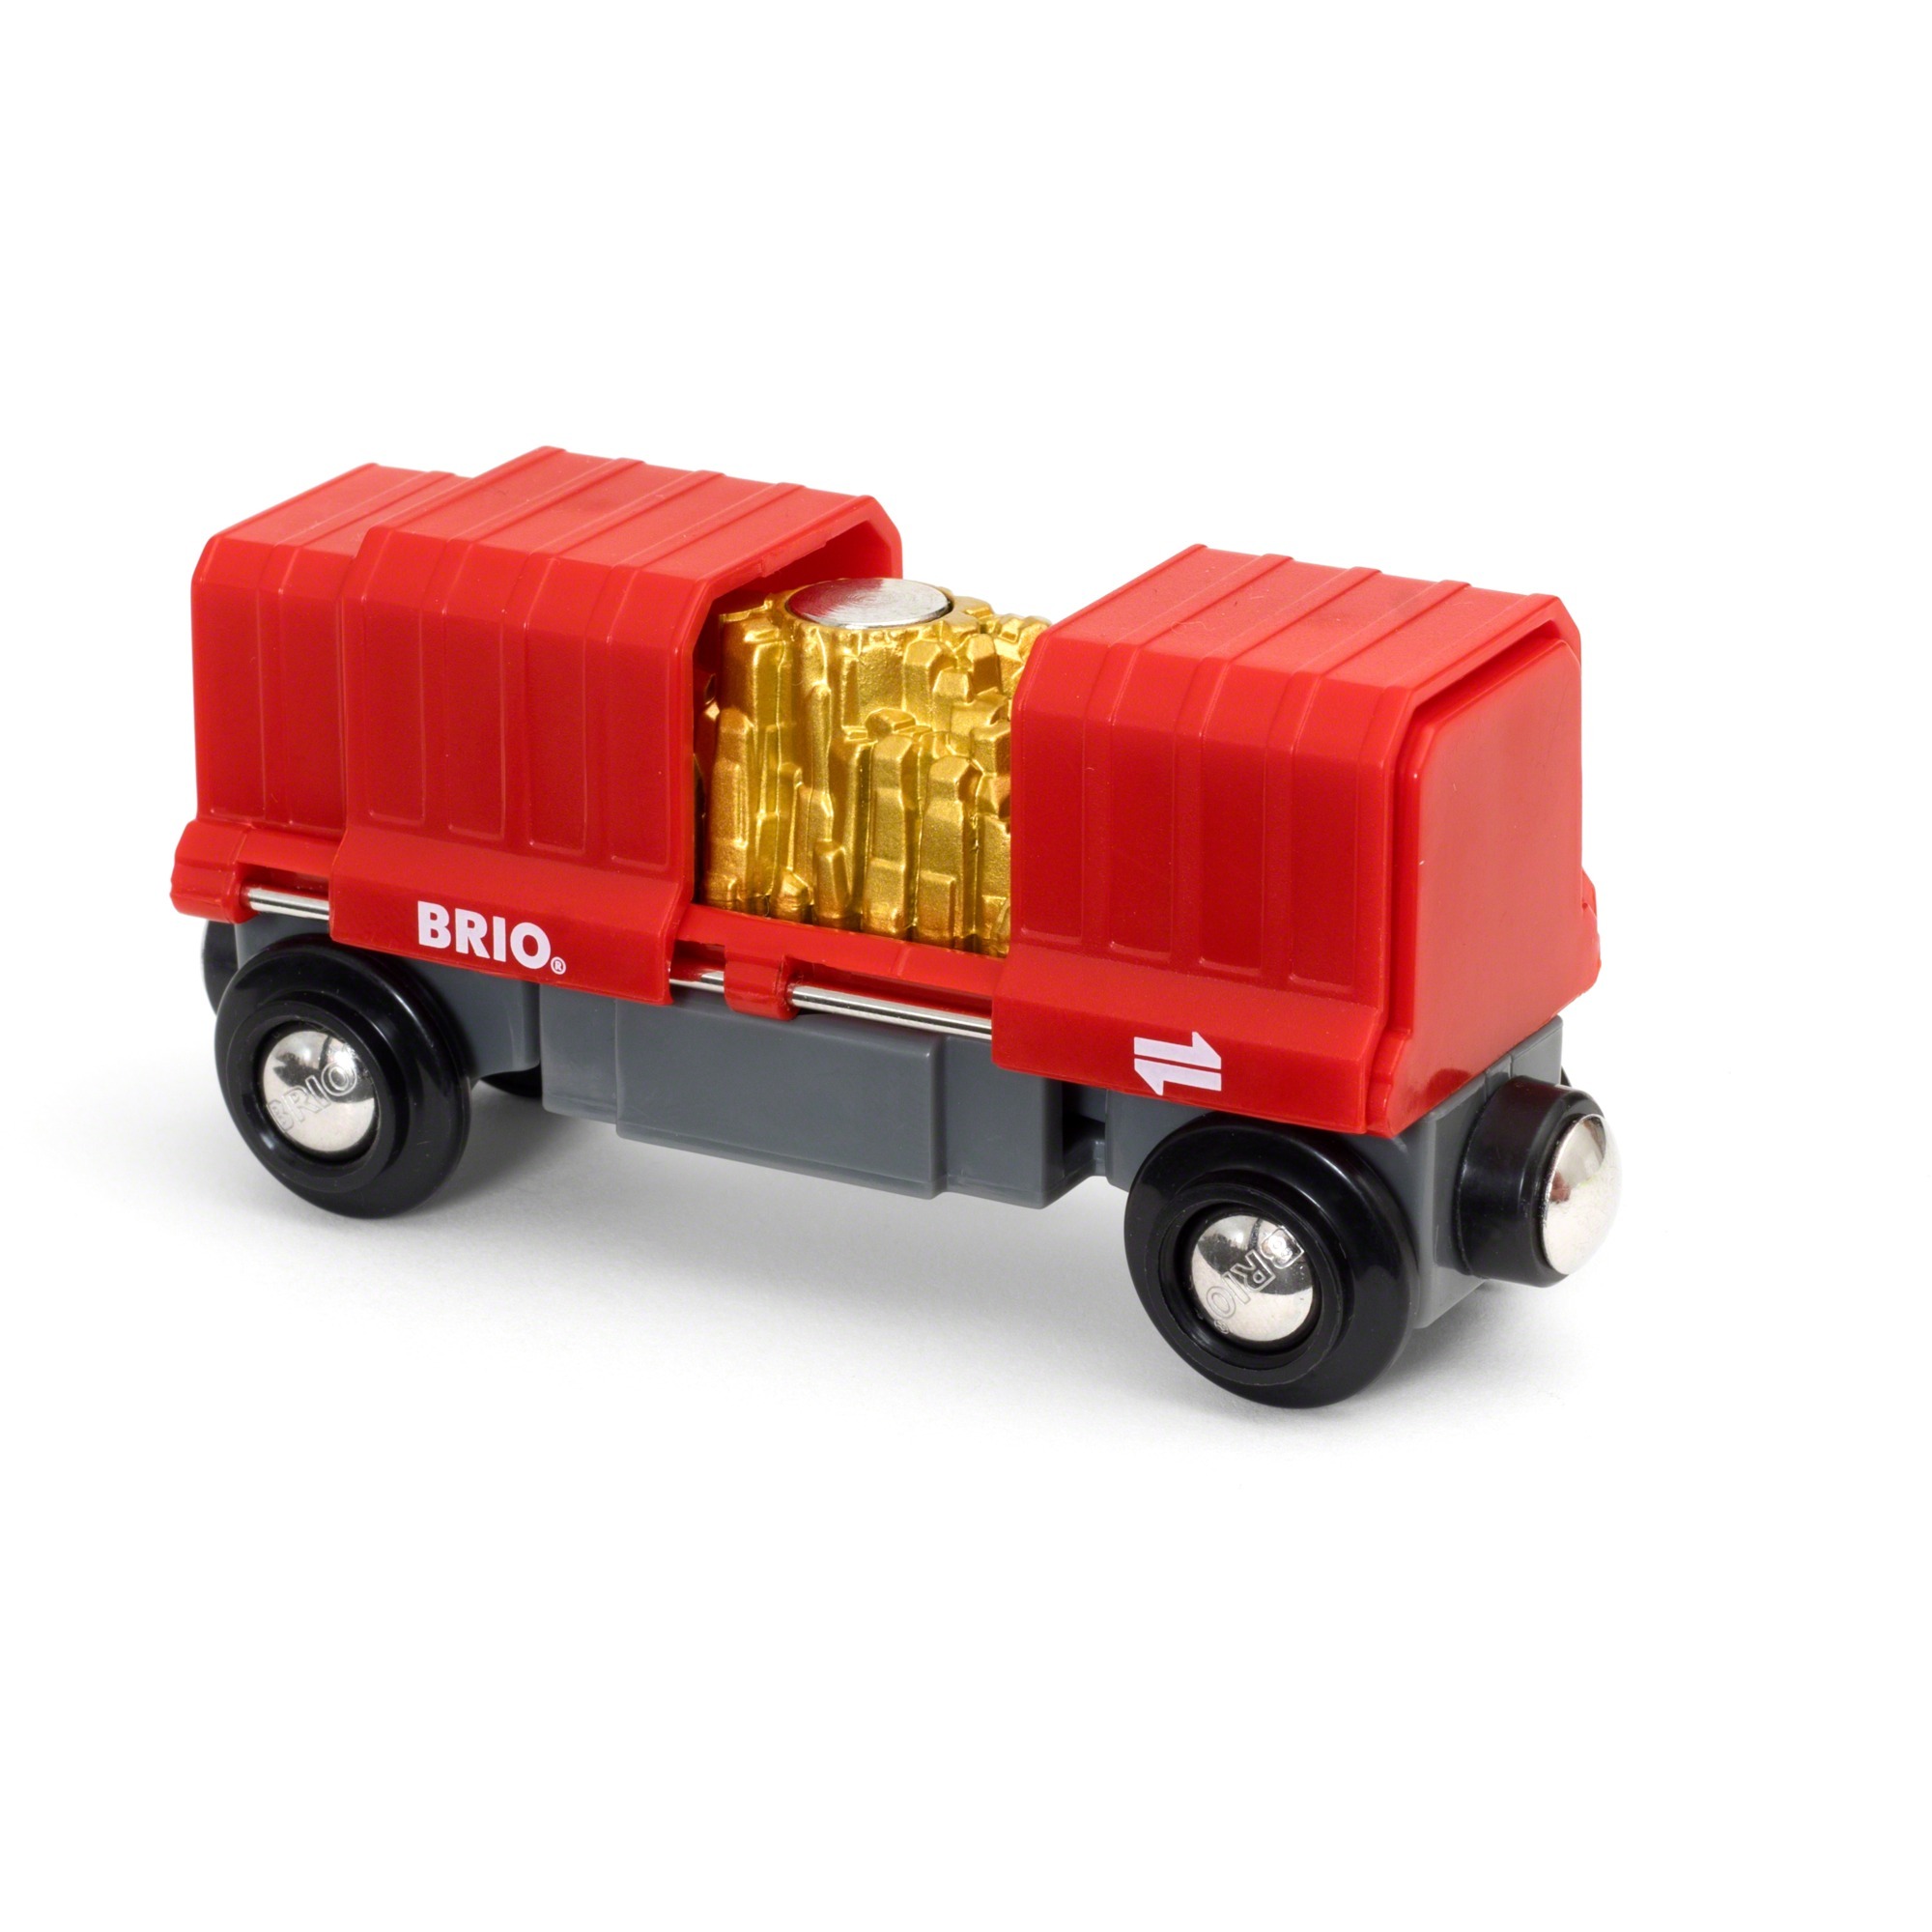 Image of Alternate - Container Goldwaggon, Spielfahrzeug online einkaufen bei Alternate